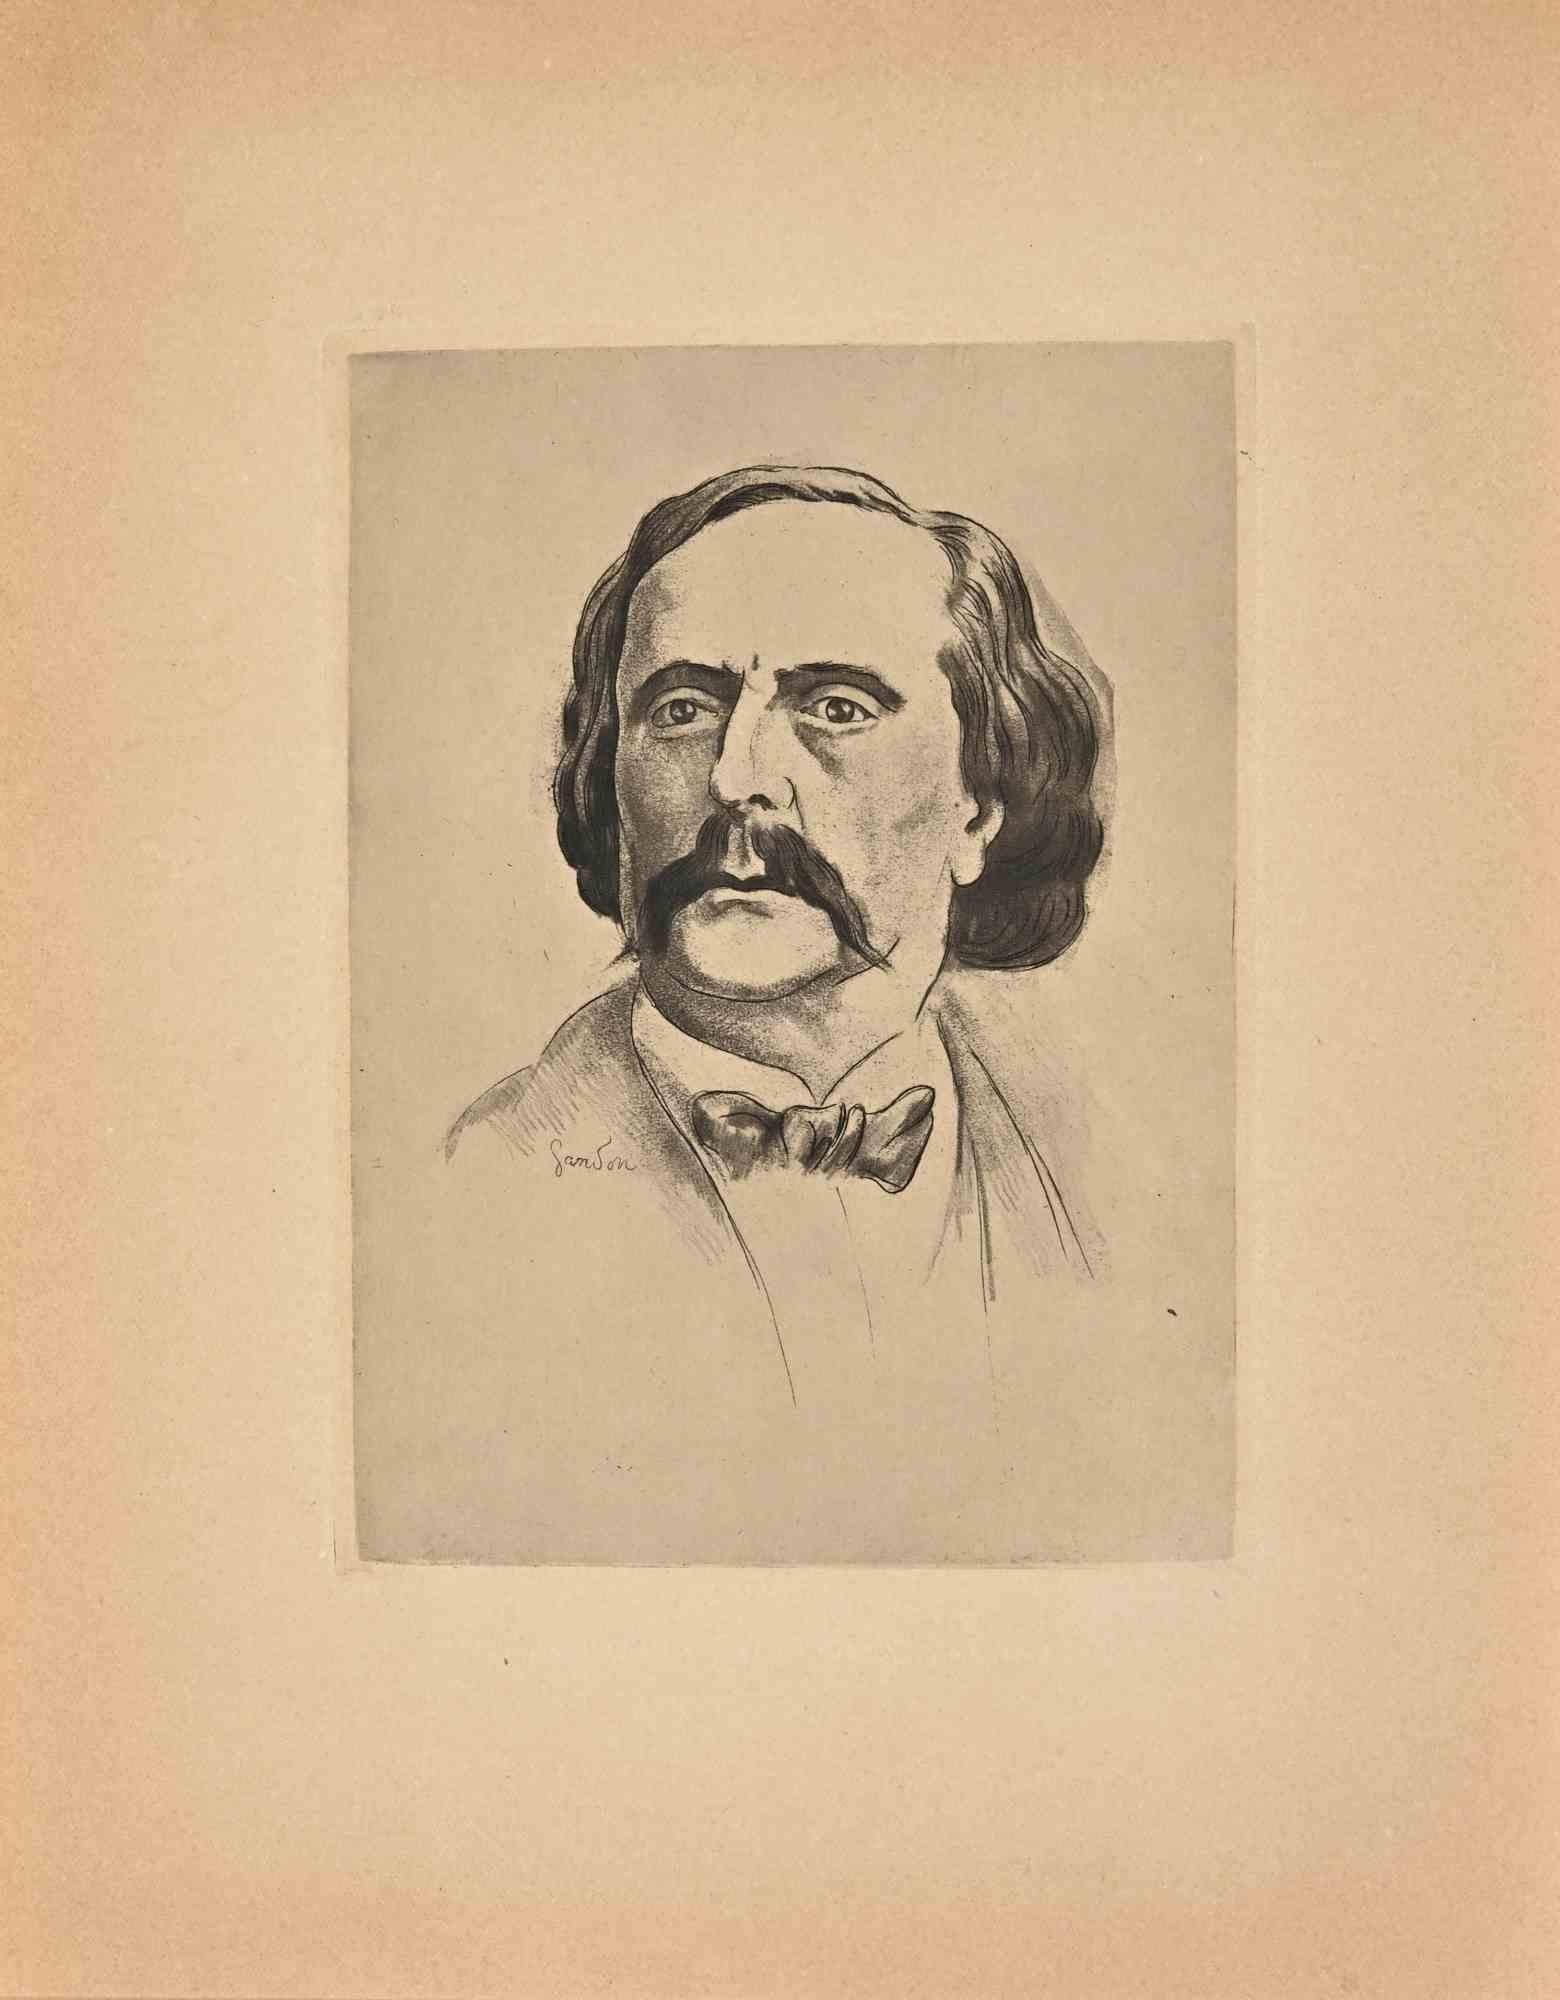 Das Porträt von Jules Barbey d'Aurevilly ist ein modernes Kunstwerk von Pierre Gandon.

Schwarz-Weiß-Radierung auf cremefarbenem Papier.

Signiert auf der Platte.

Gute Bedingungen.

Das Porträt von Jules Barbey d'Aurevilly wurde mit weichen